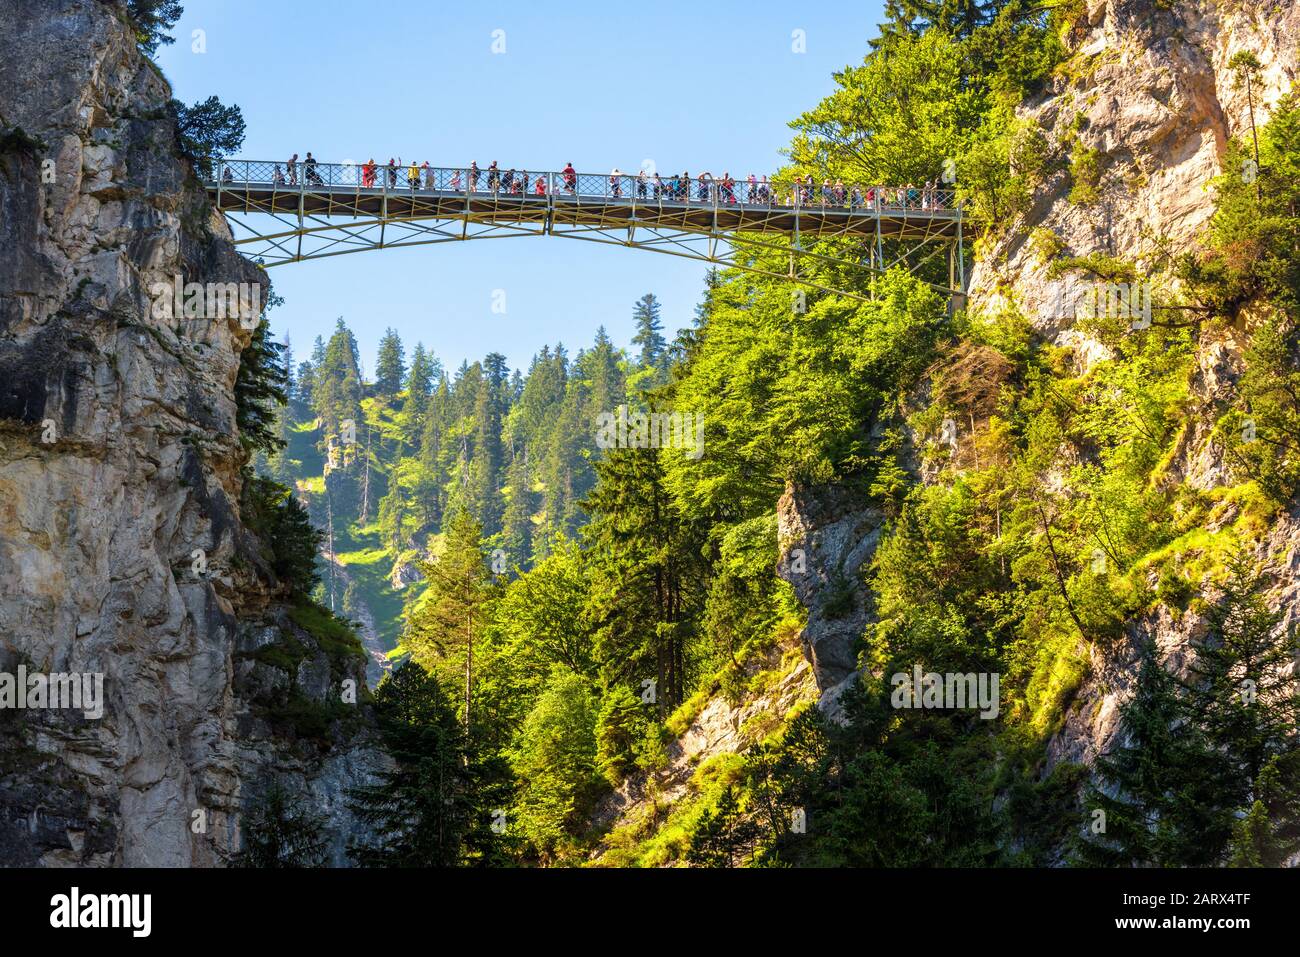 Deutschland - 23. Juli 2019: Marienbrücke oder Königinbrücke in Berg bei Schloss Neuschwanstein, Bayern. Alpenpanorama von Schlucht und Hochbridg Stockfoto